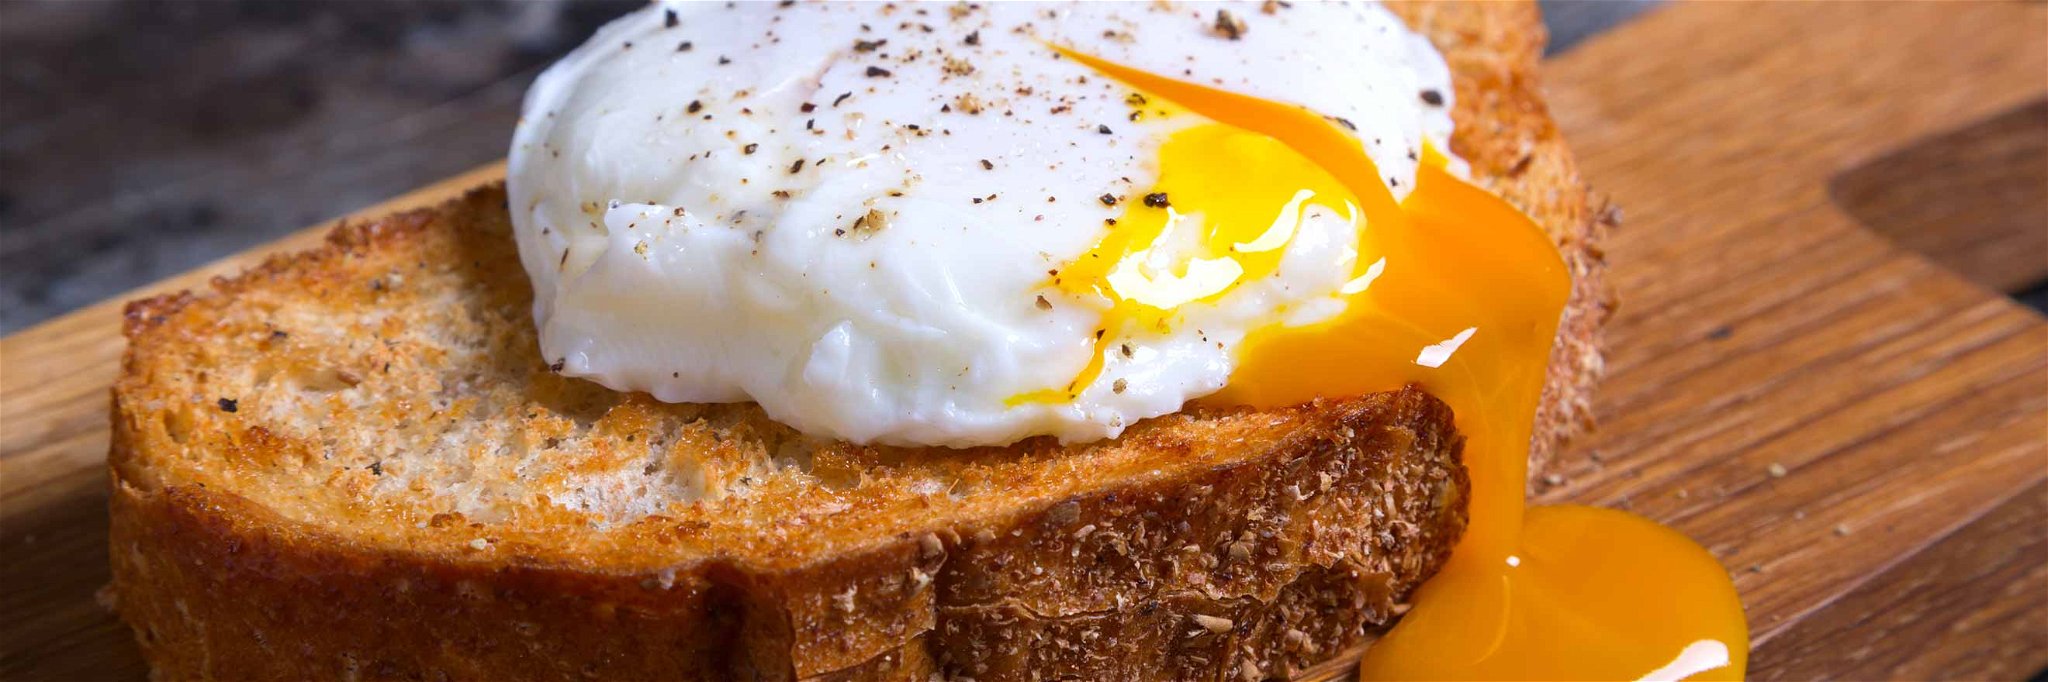 Eine bewährte Kombination: pochiertes Ei auf getoastetem Brot.